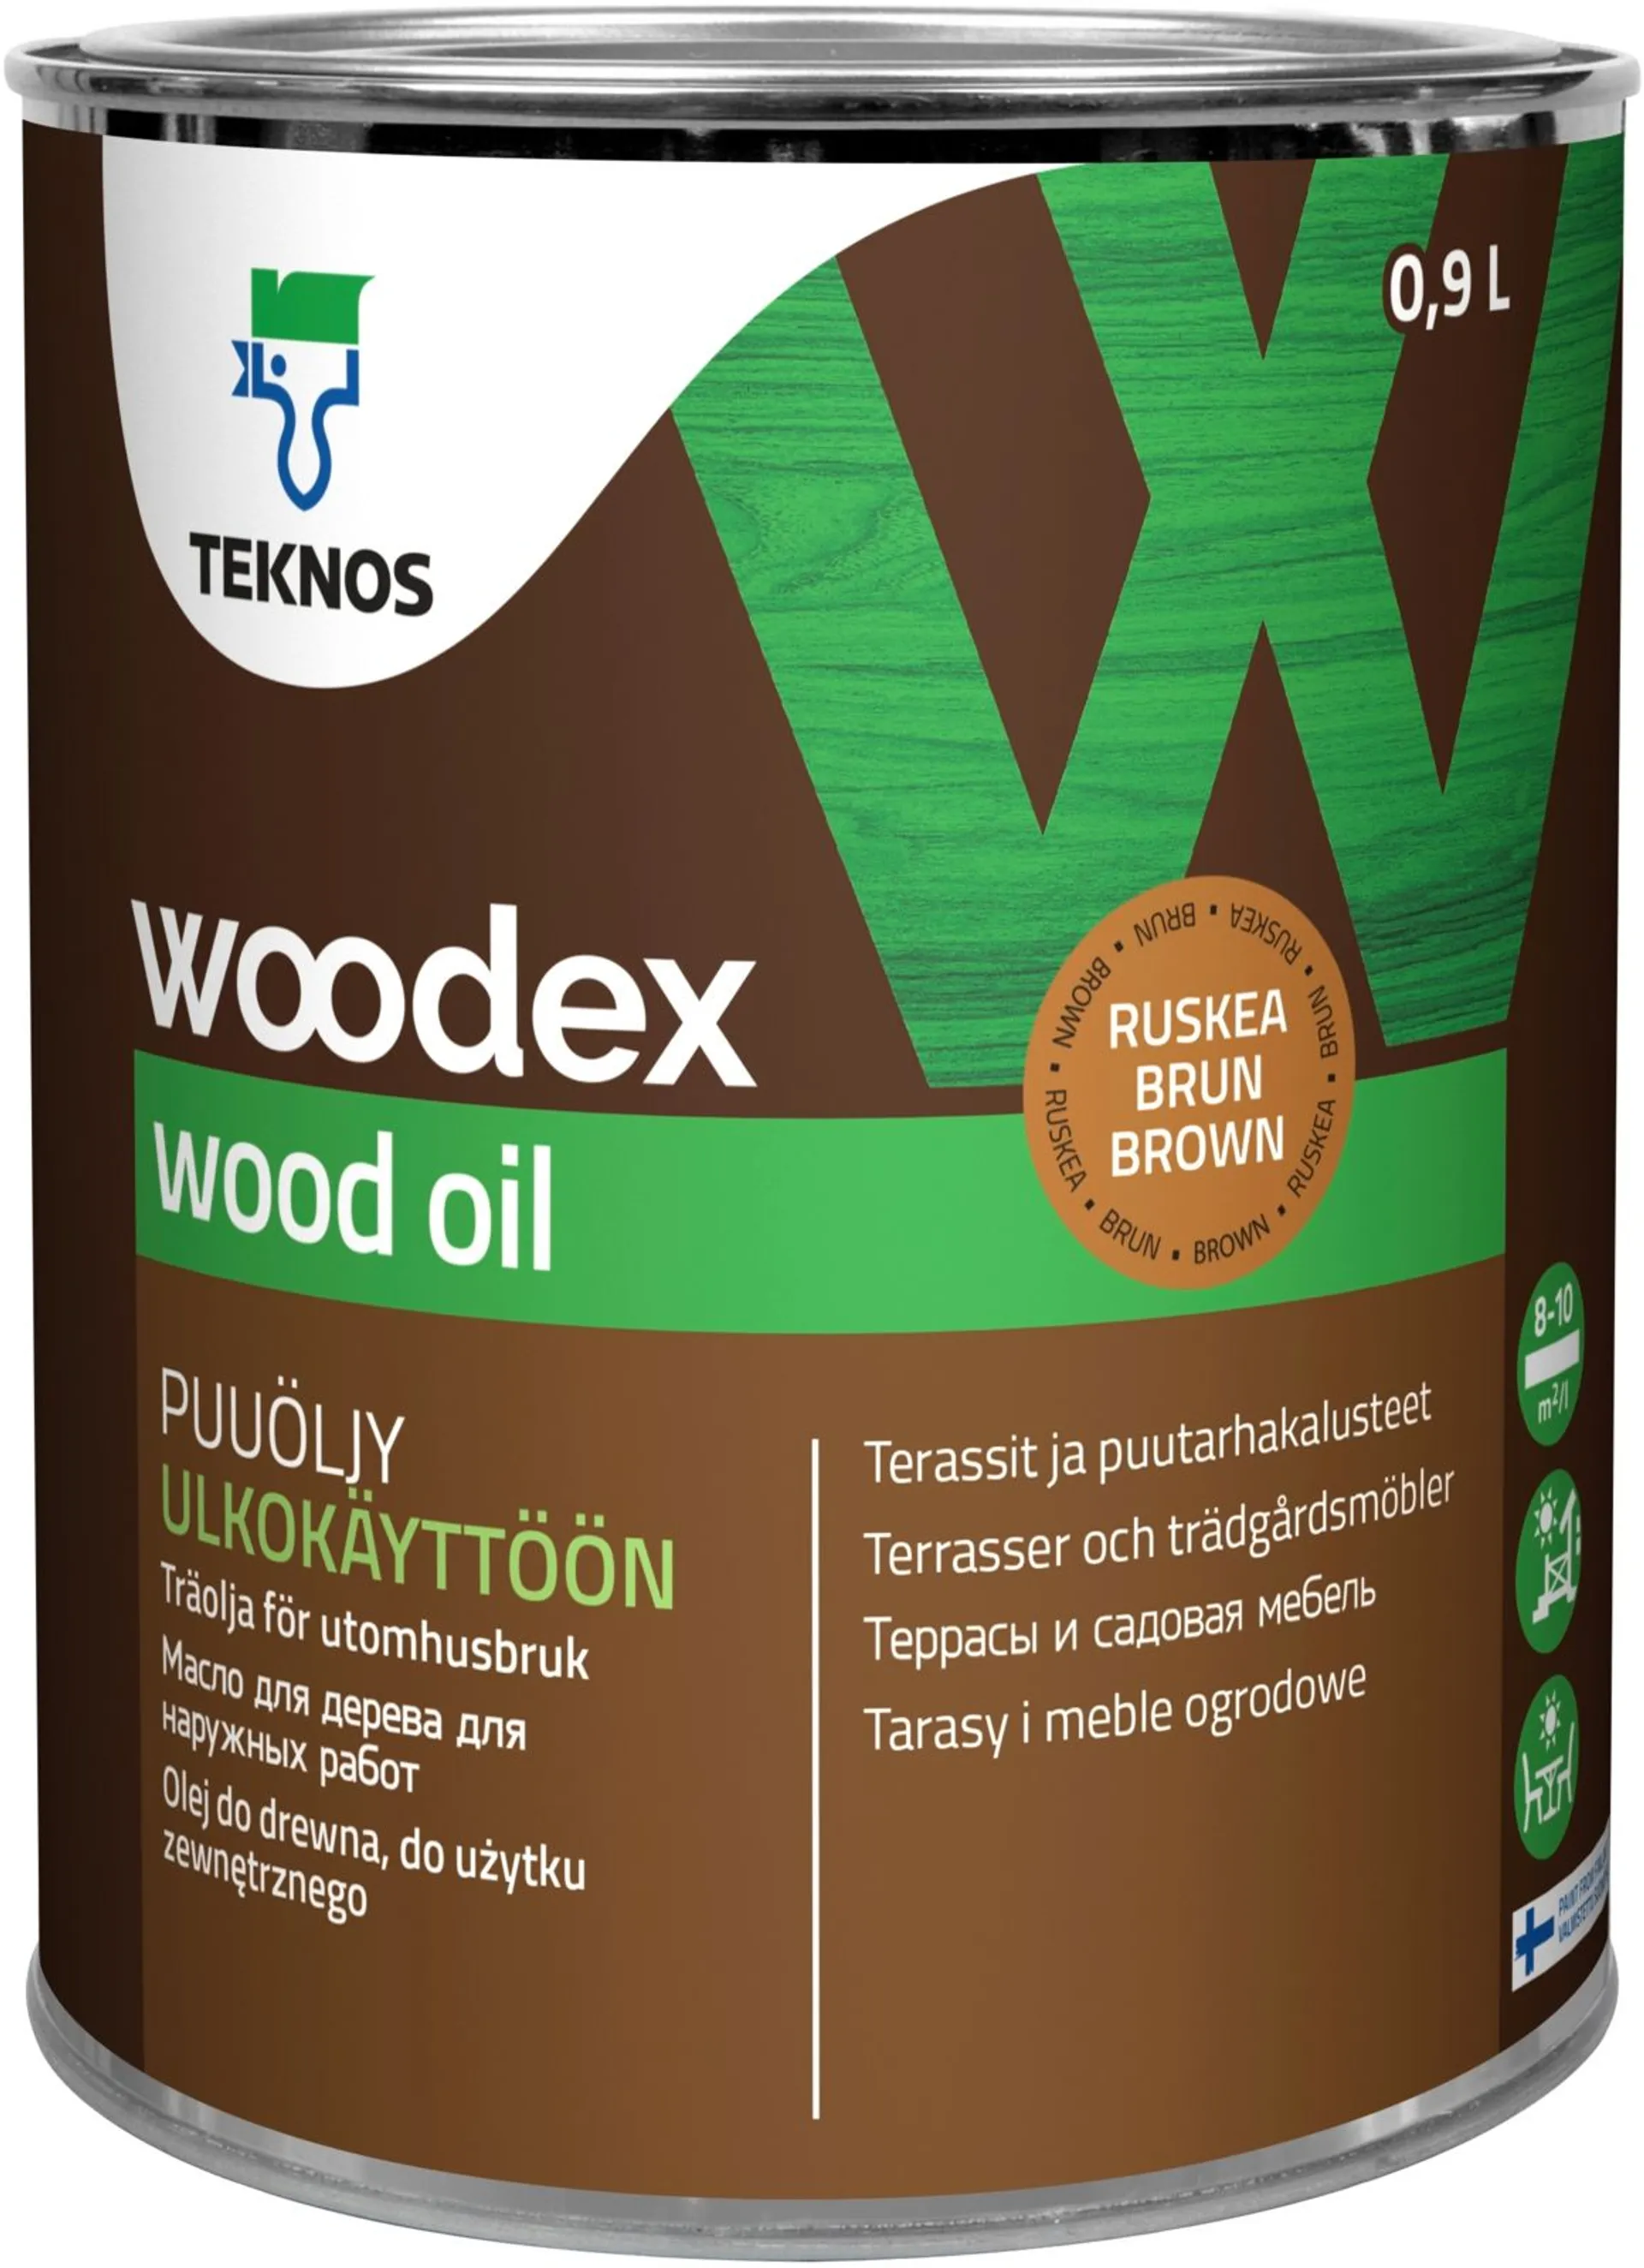 Teknos puuöljy Woodex Wood Oil  0,9 l ruskea